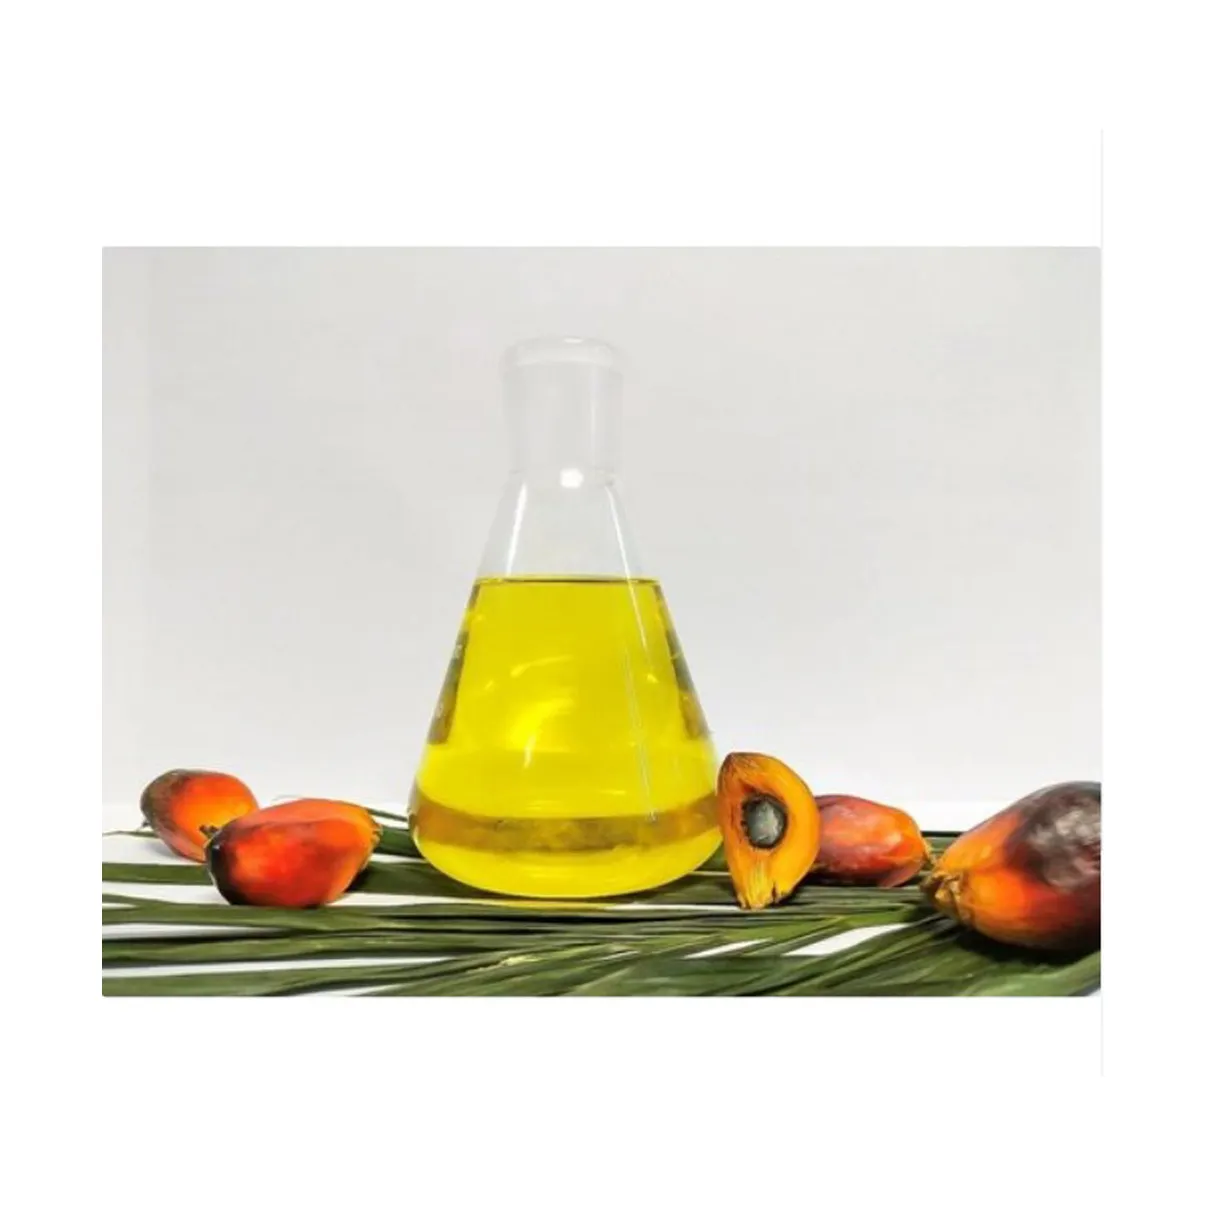 Yüksek kaliteli rafine ve ham kırmızı palmiye yağı/palmiye fındık yağı/rafine Palm bitkisel pişirme yağı satılık